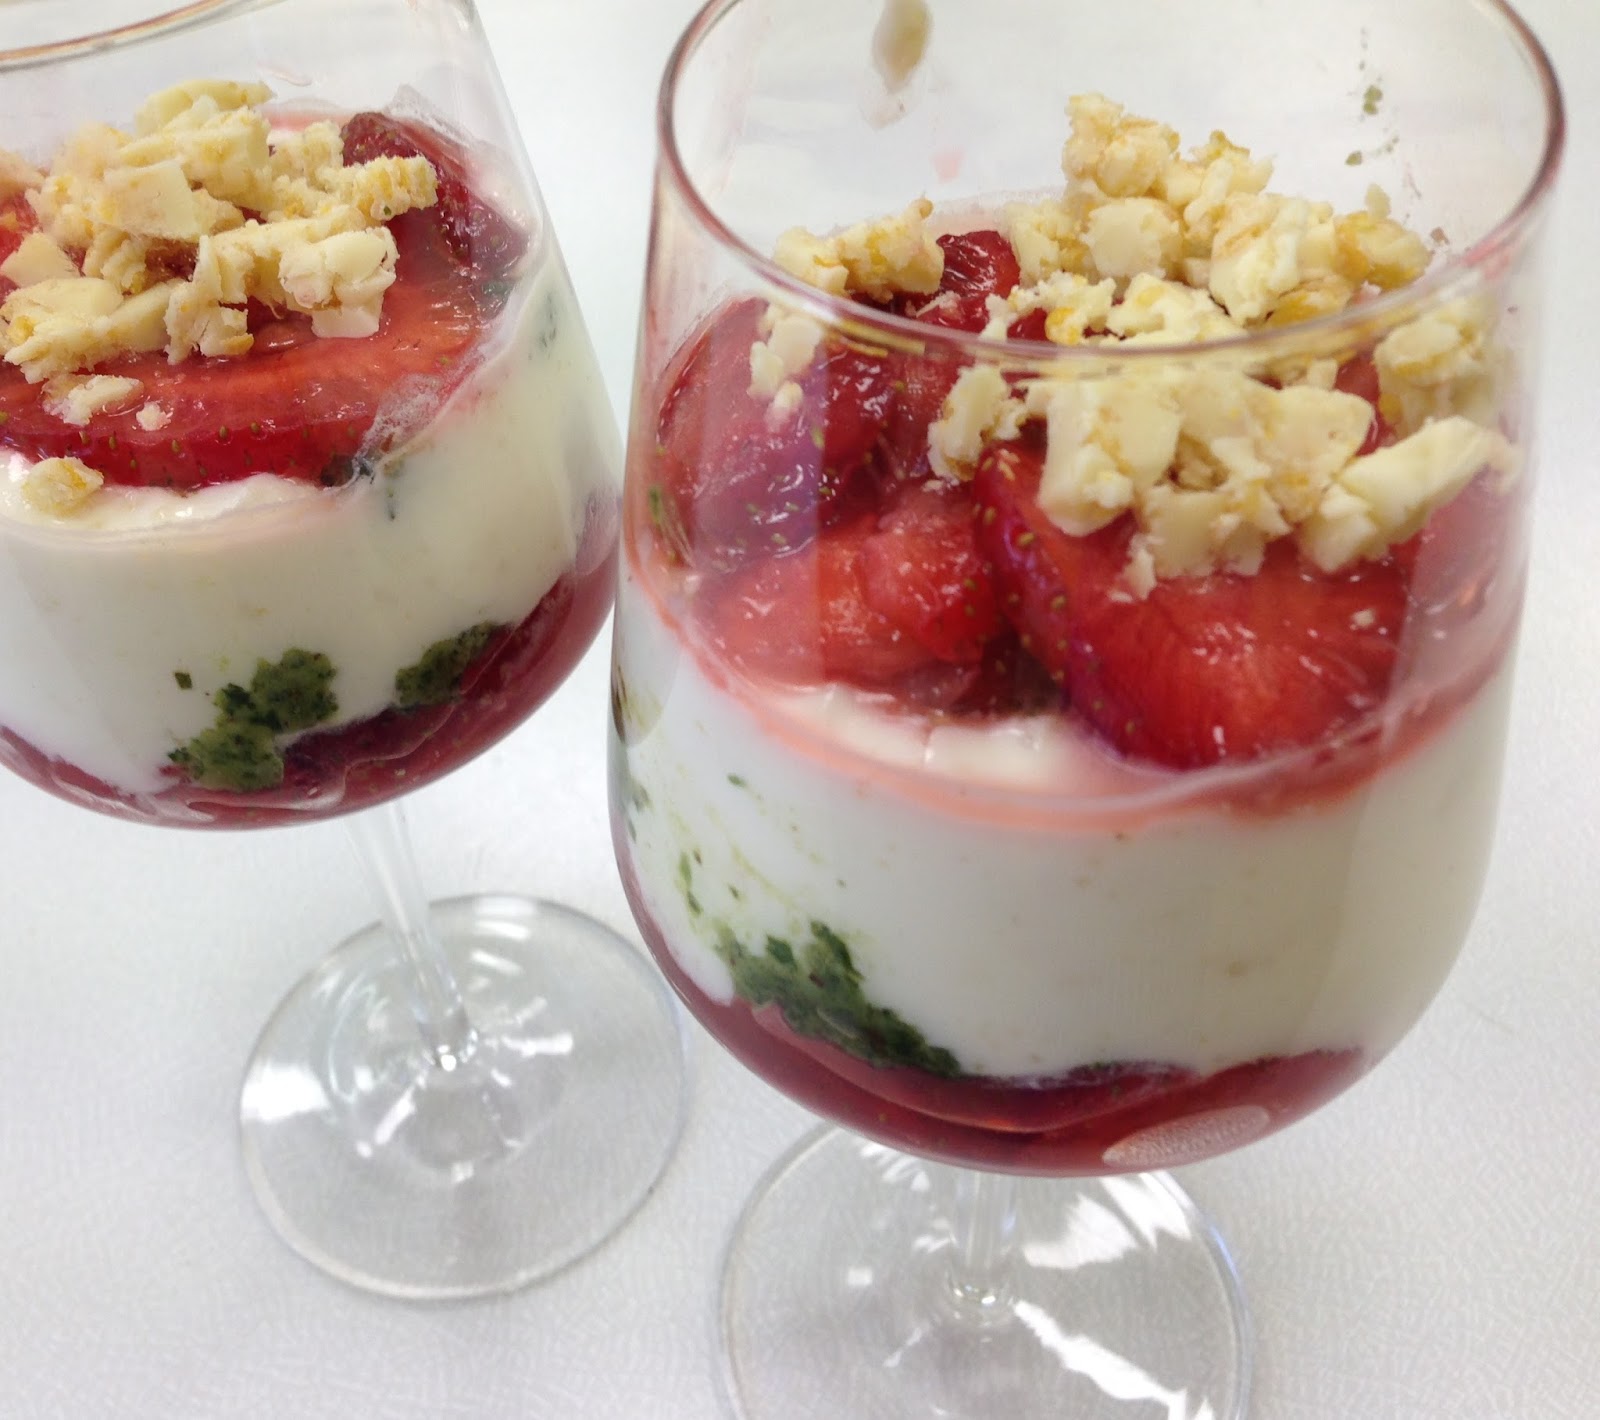 Maexies Bistro: Das spezielle Dessert: Erdbeer-Basilikum-Traum mit ...